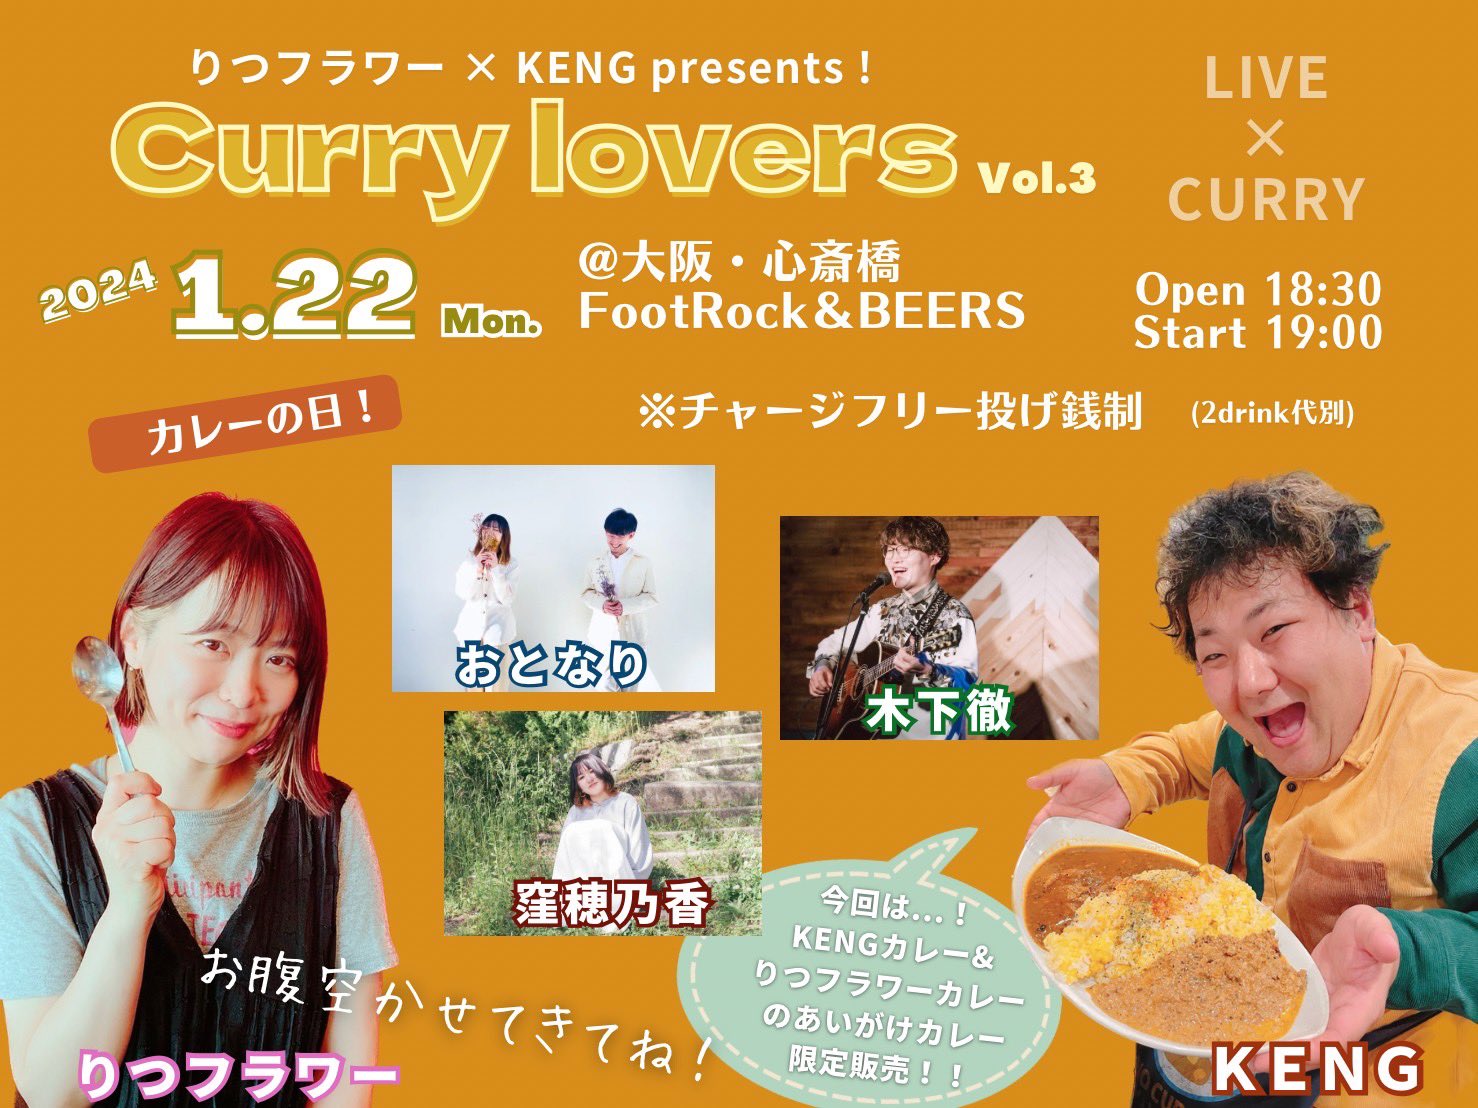 りつフラワー×KENG presents! ~Curry lovers vol.3~